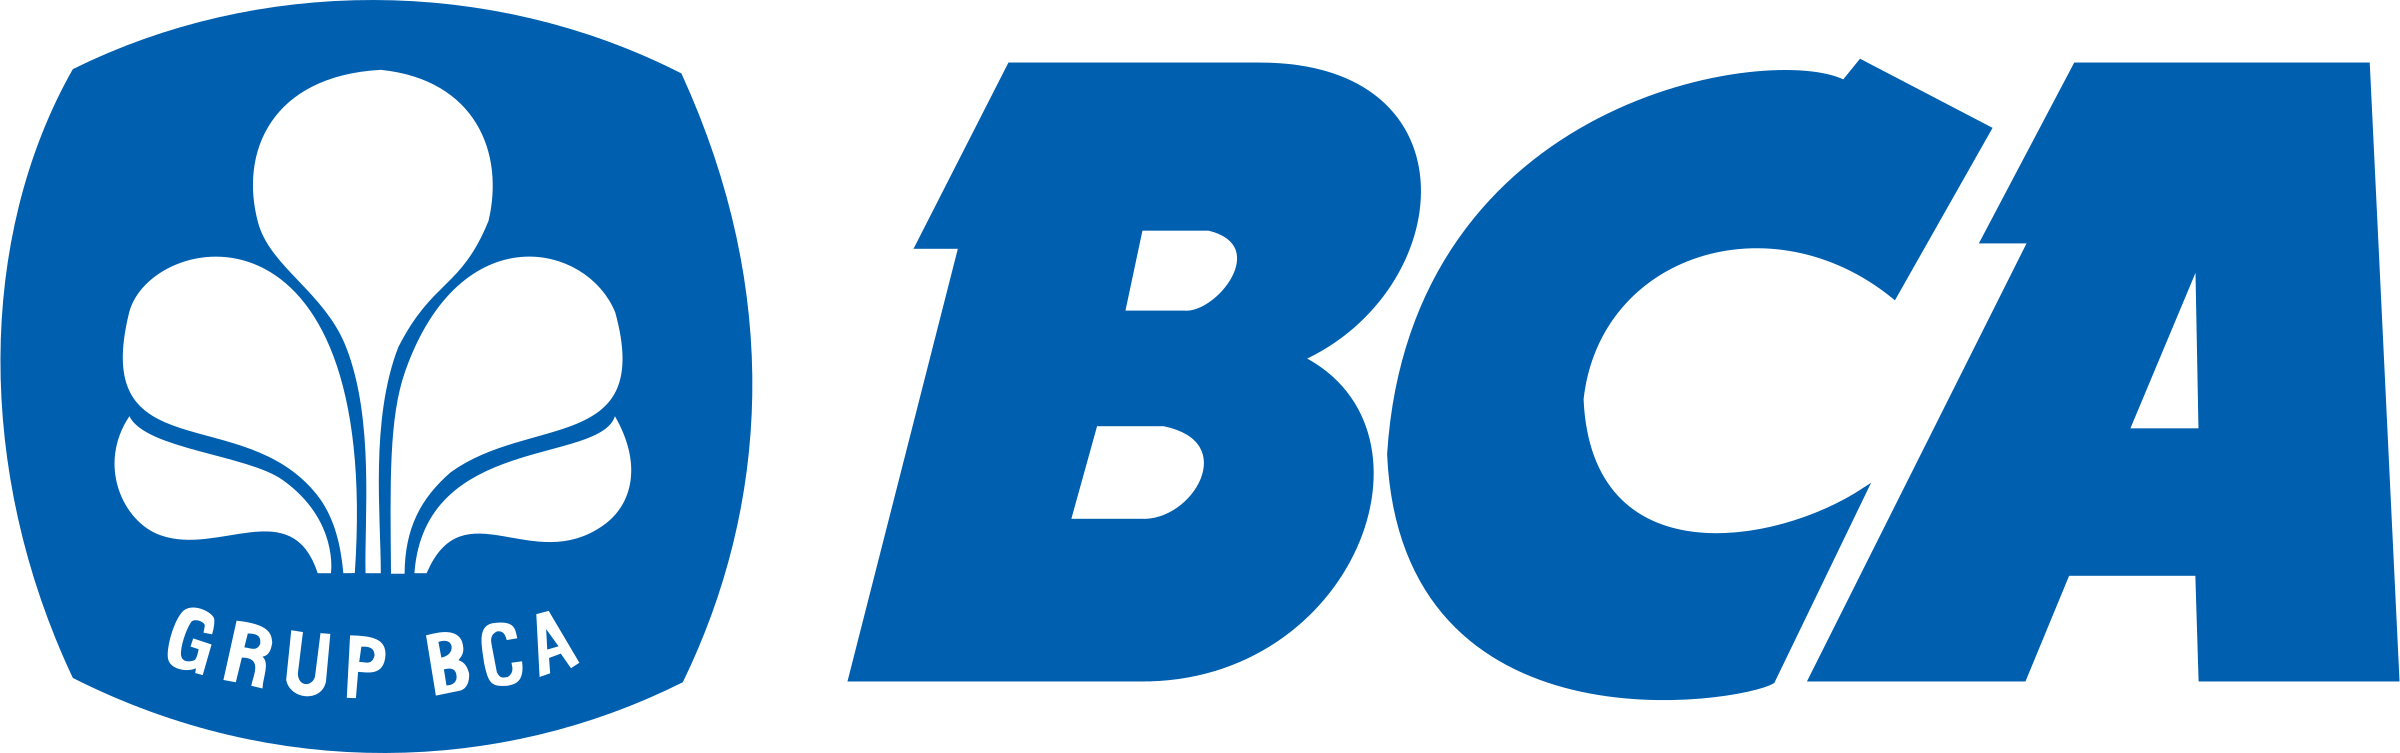 bca-bank-central-asia-logo-png-transparent